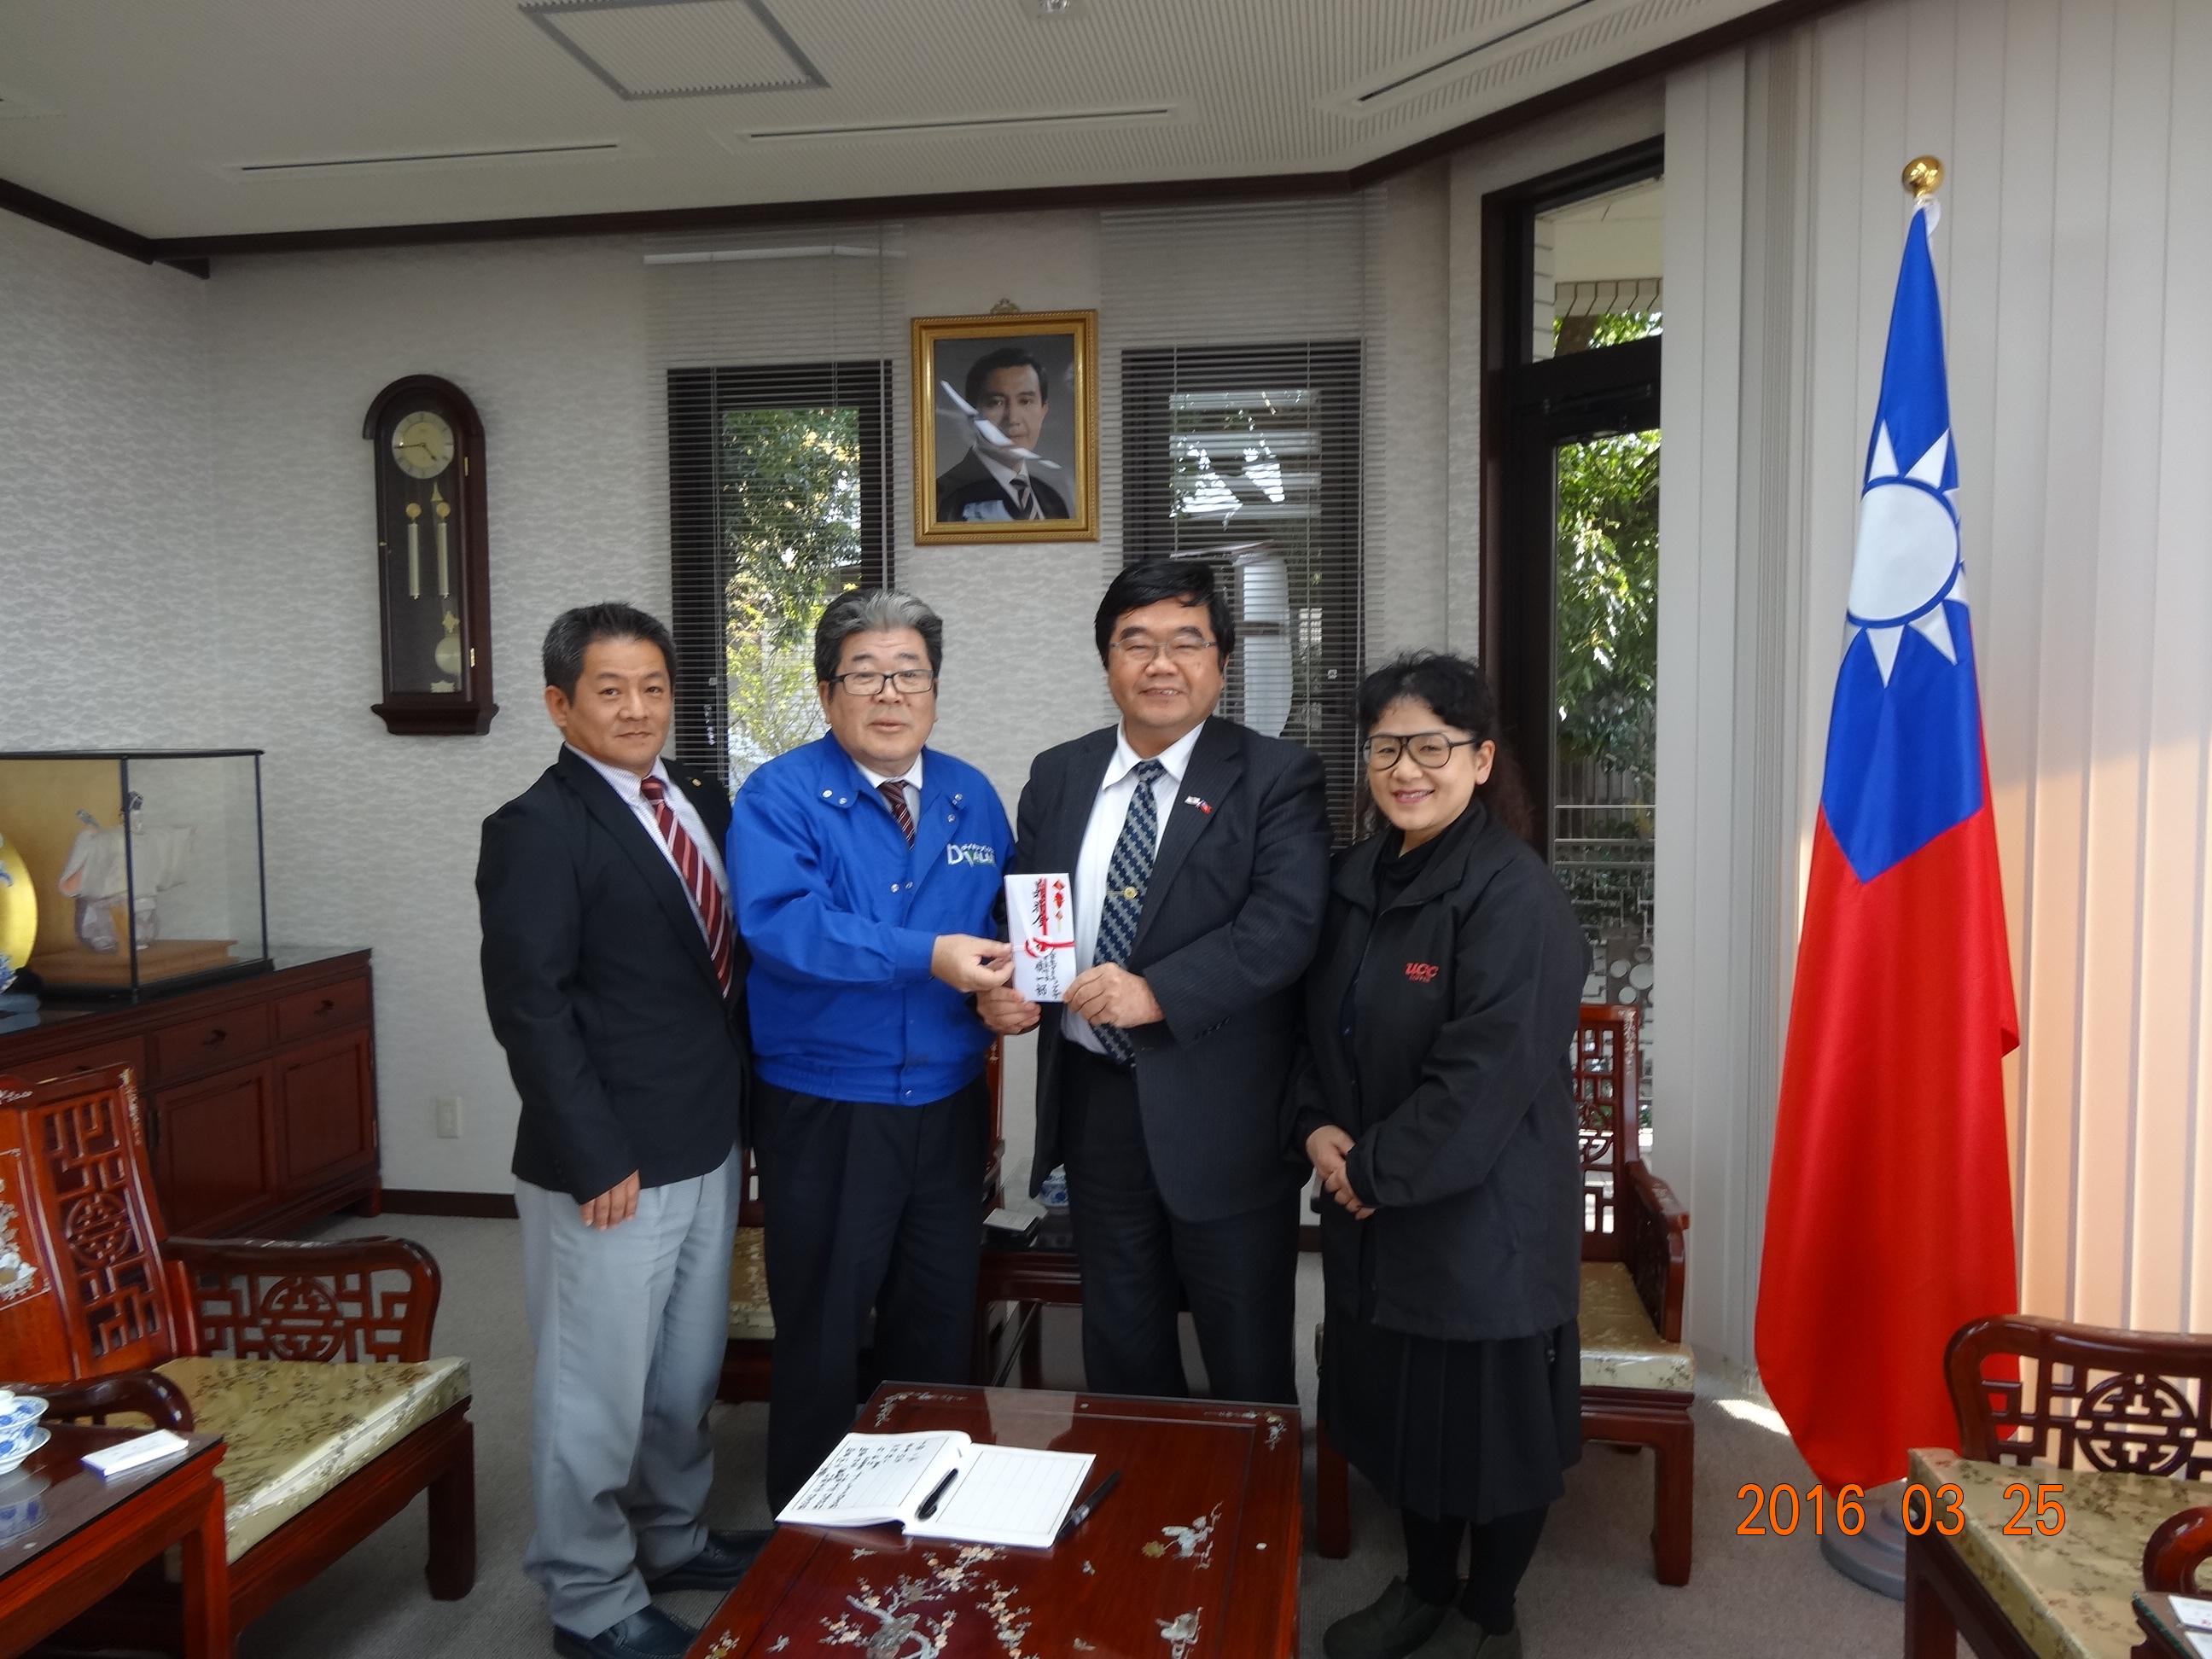 3/25株式会社ダイキョープラザ小栁和也專務取締役、赤間幸榮總務部部長等二人が取締役杉慎一郎社長を代表して台湾南部大震災義援金を提供した。